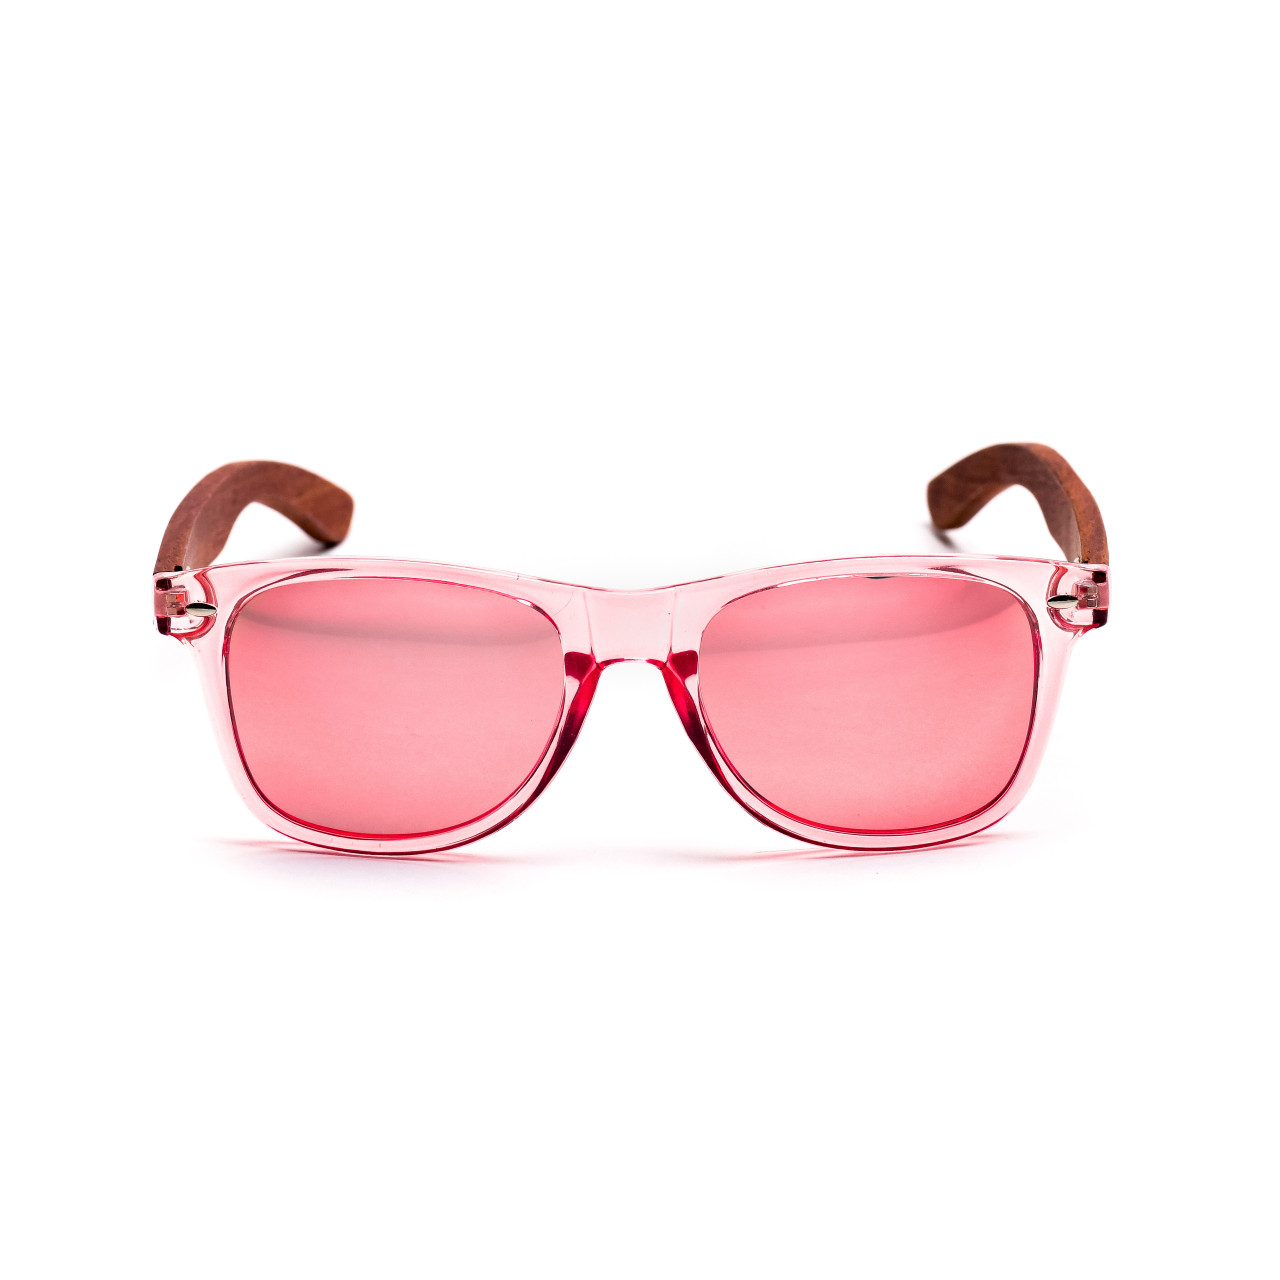 Brýle Classic – růžové čočky + průhledné růžové obroučky + růže s gravírováním